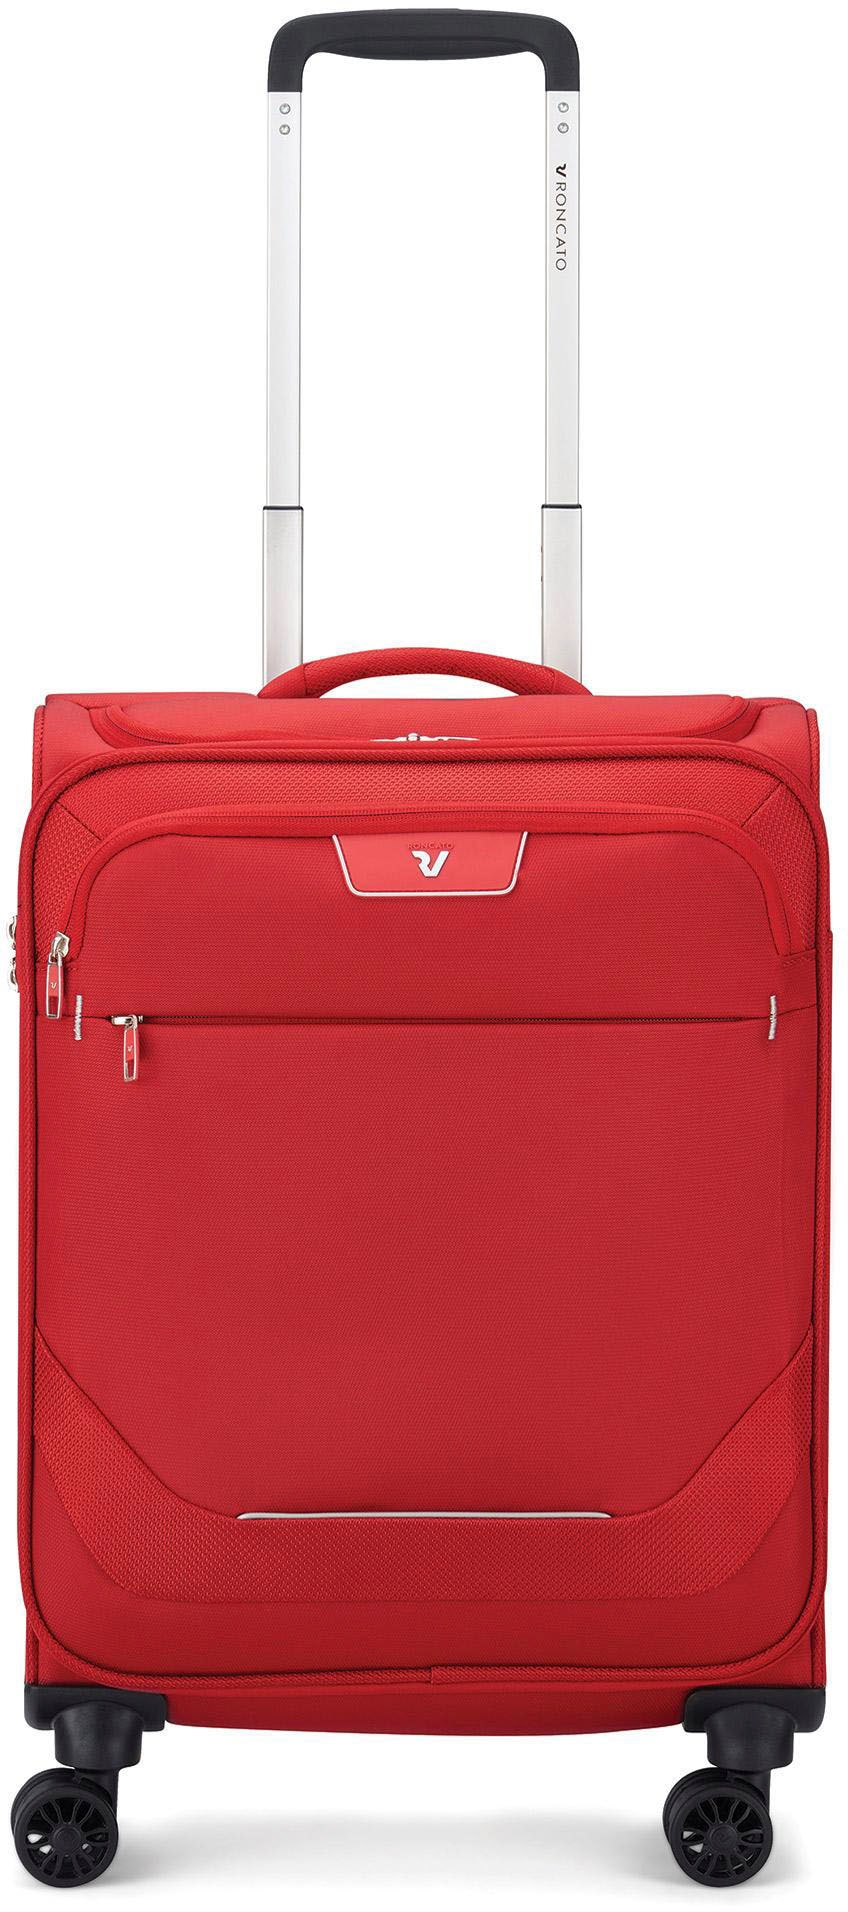 RONCATO Handgepäck-Trolley "Joy Carry-on, 55 cm, erweiterbar, rot", 4 Rollen, Weichgepäck-Koffer Reisegepäck mit Volumen